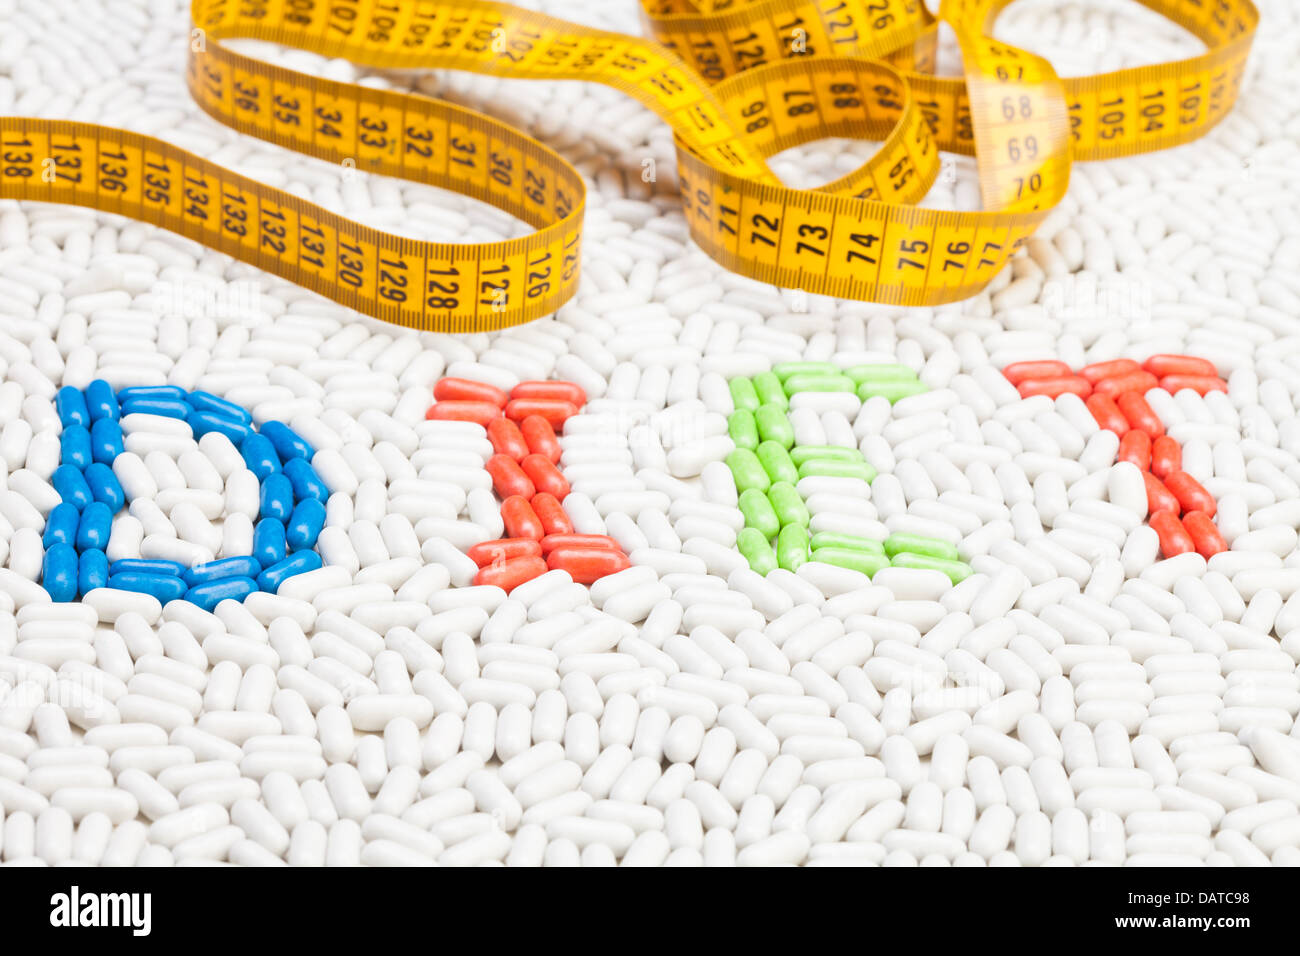 Diät-Word-Text von Tabletten und Pillen Medikamente in verschiedenen Farben, die zusammen als Mosaik mit Zentimeter auf Verlegung oben drauf gemacht Stockfoto